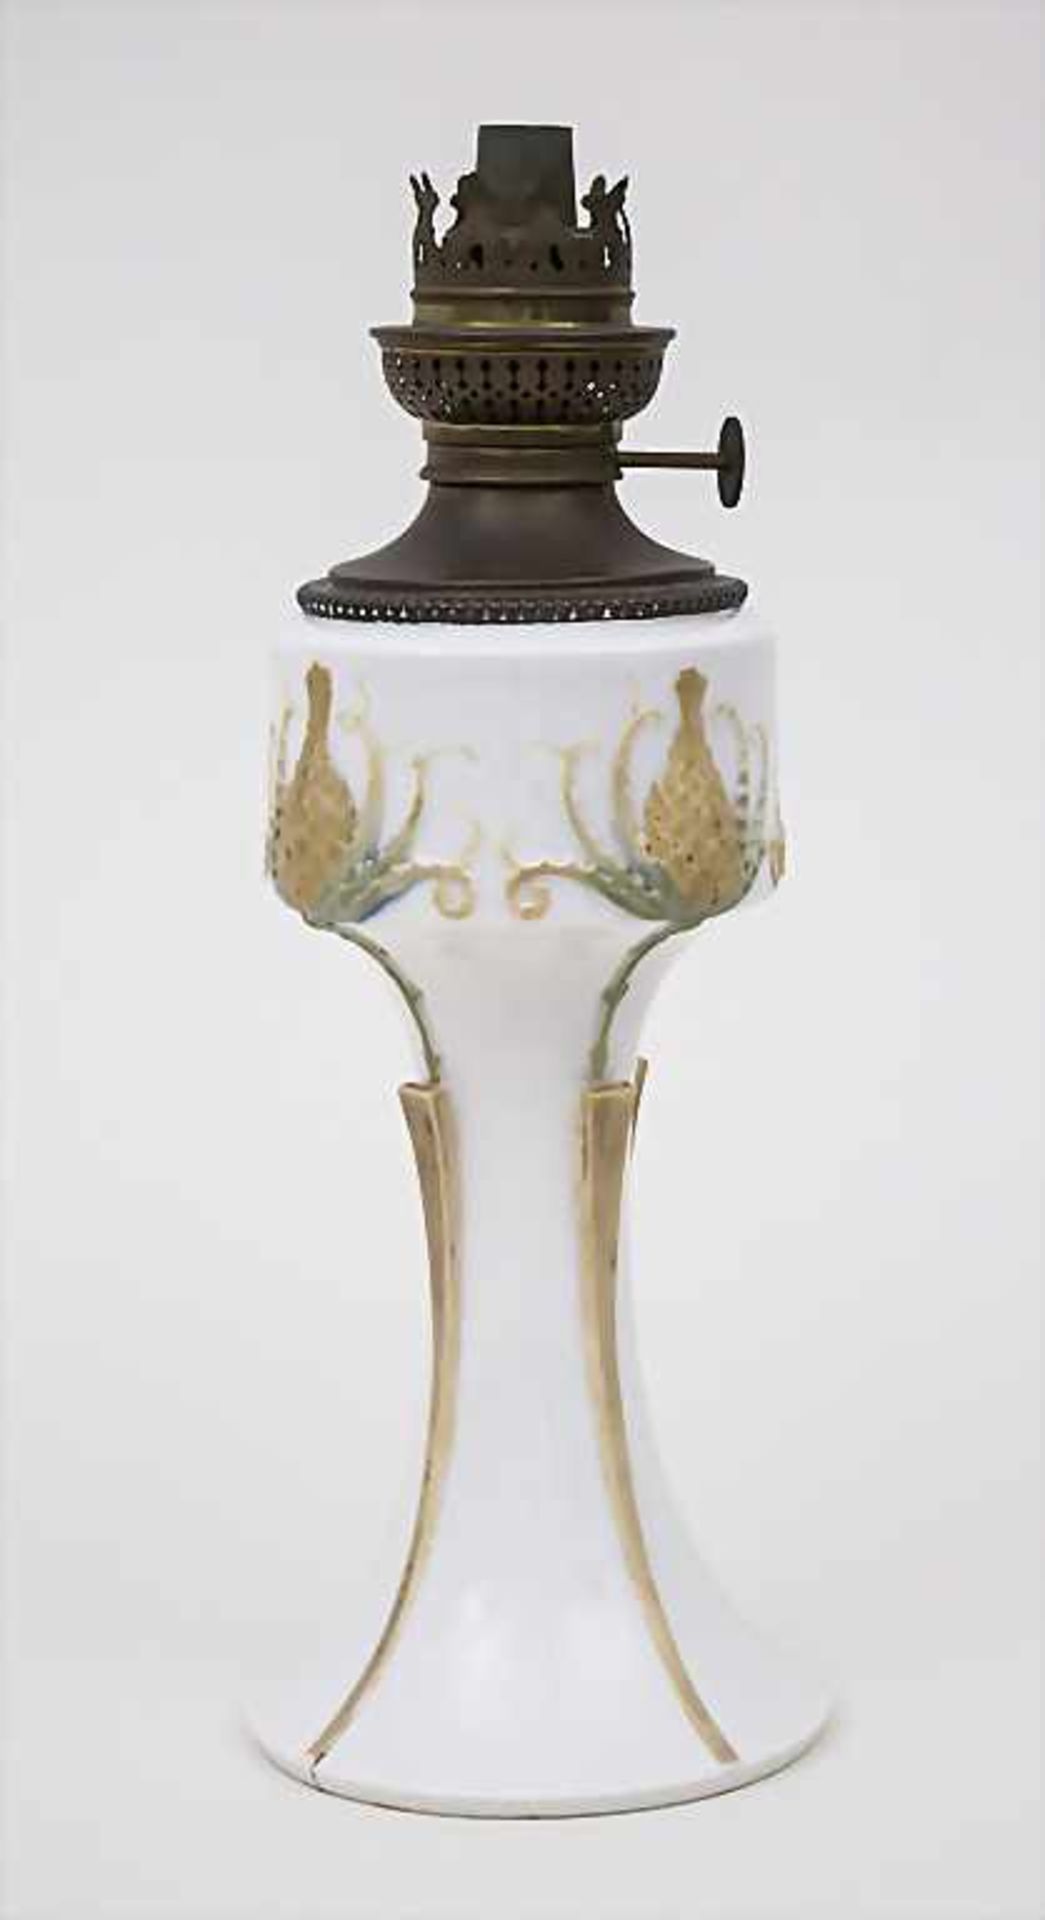 Jugendstil Petroleum Lampe 'Ciboire' (Distel) / An Art Nouveau Oil Lamp, Sèvres, 1904Material: